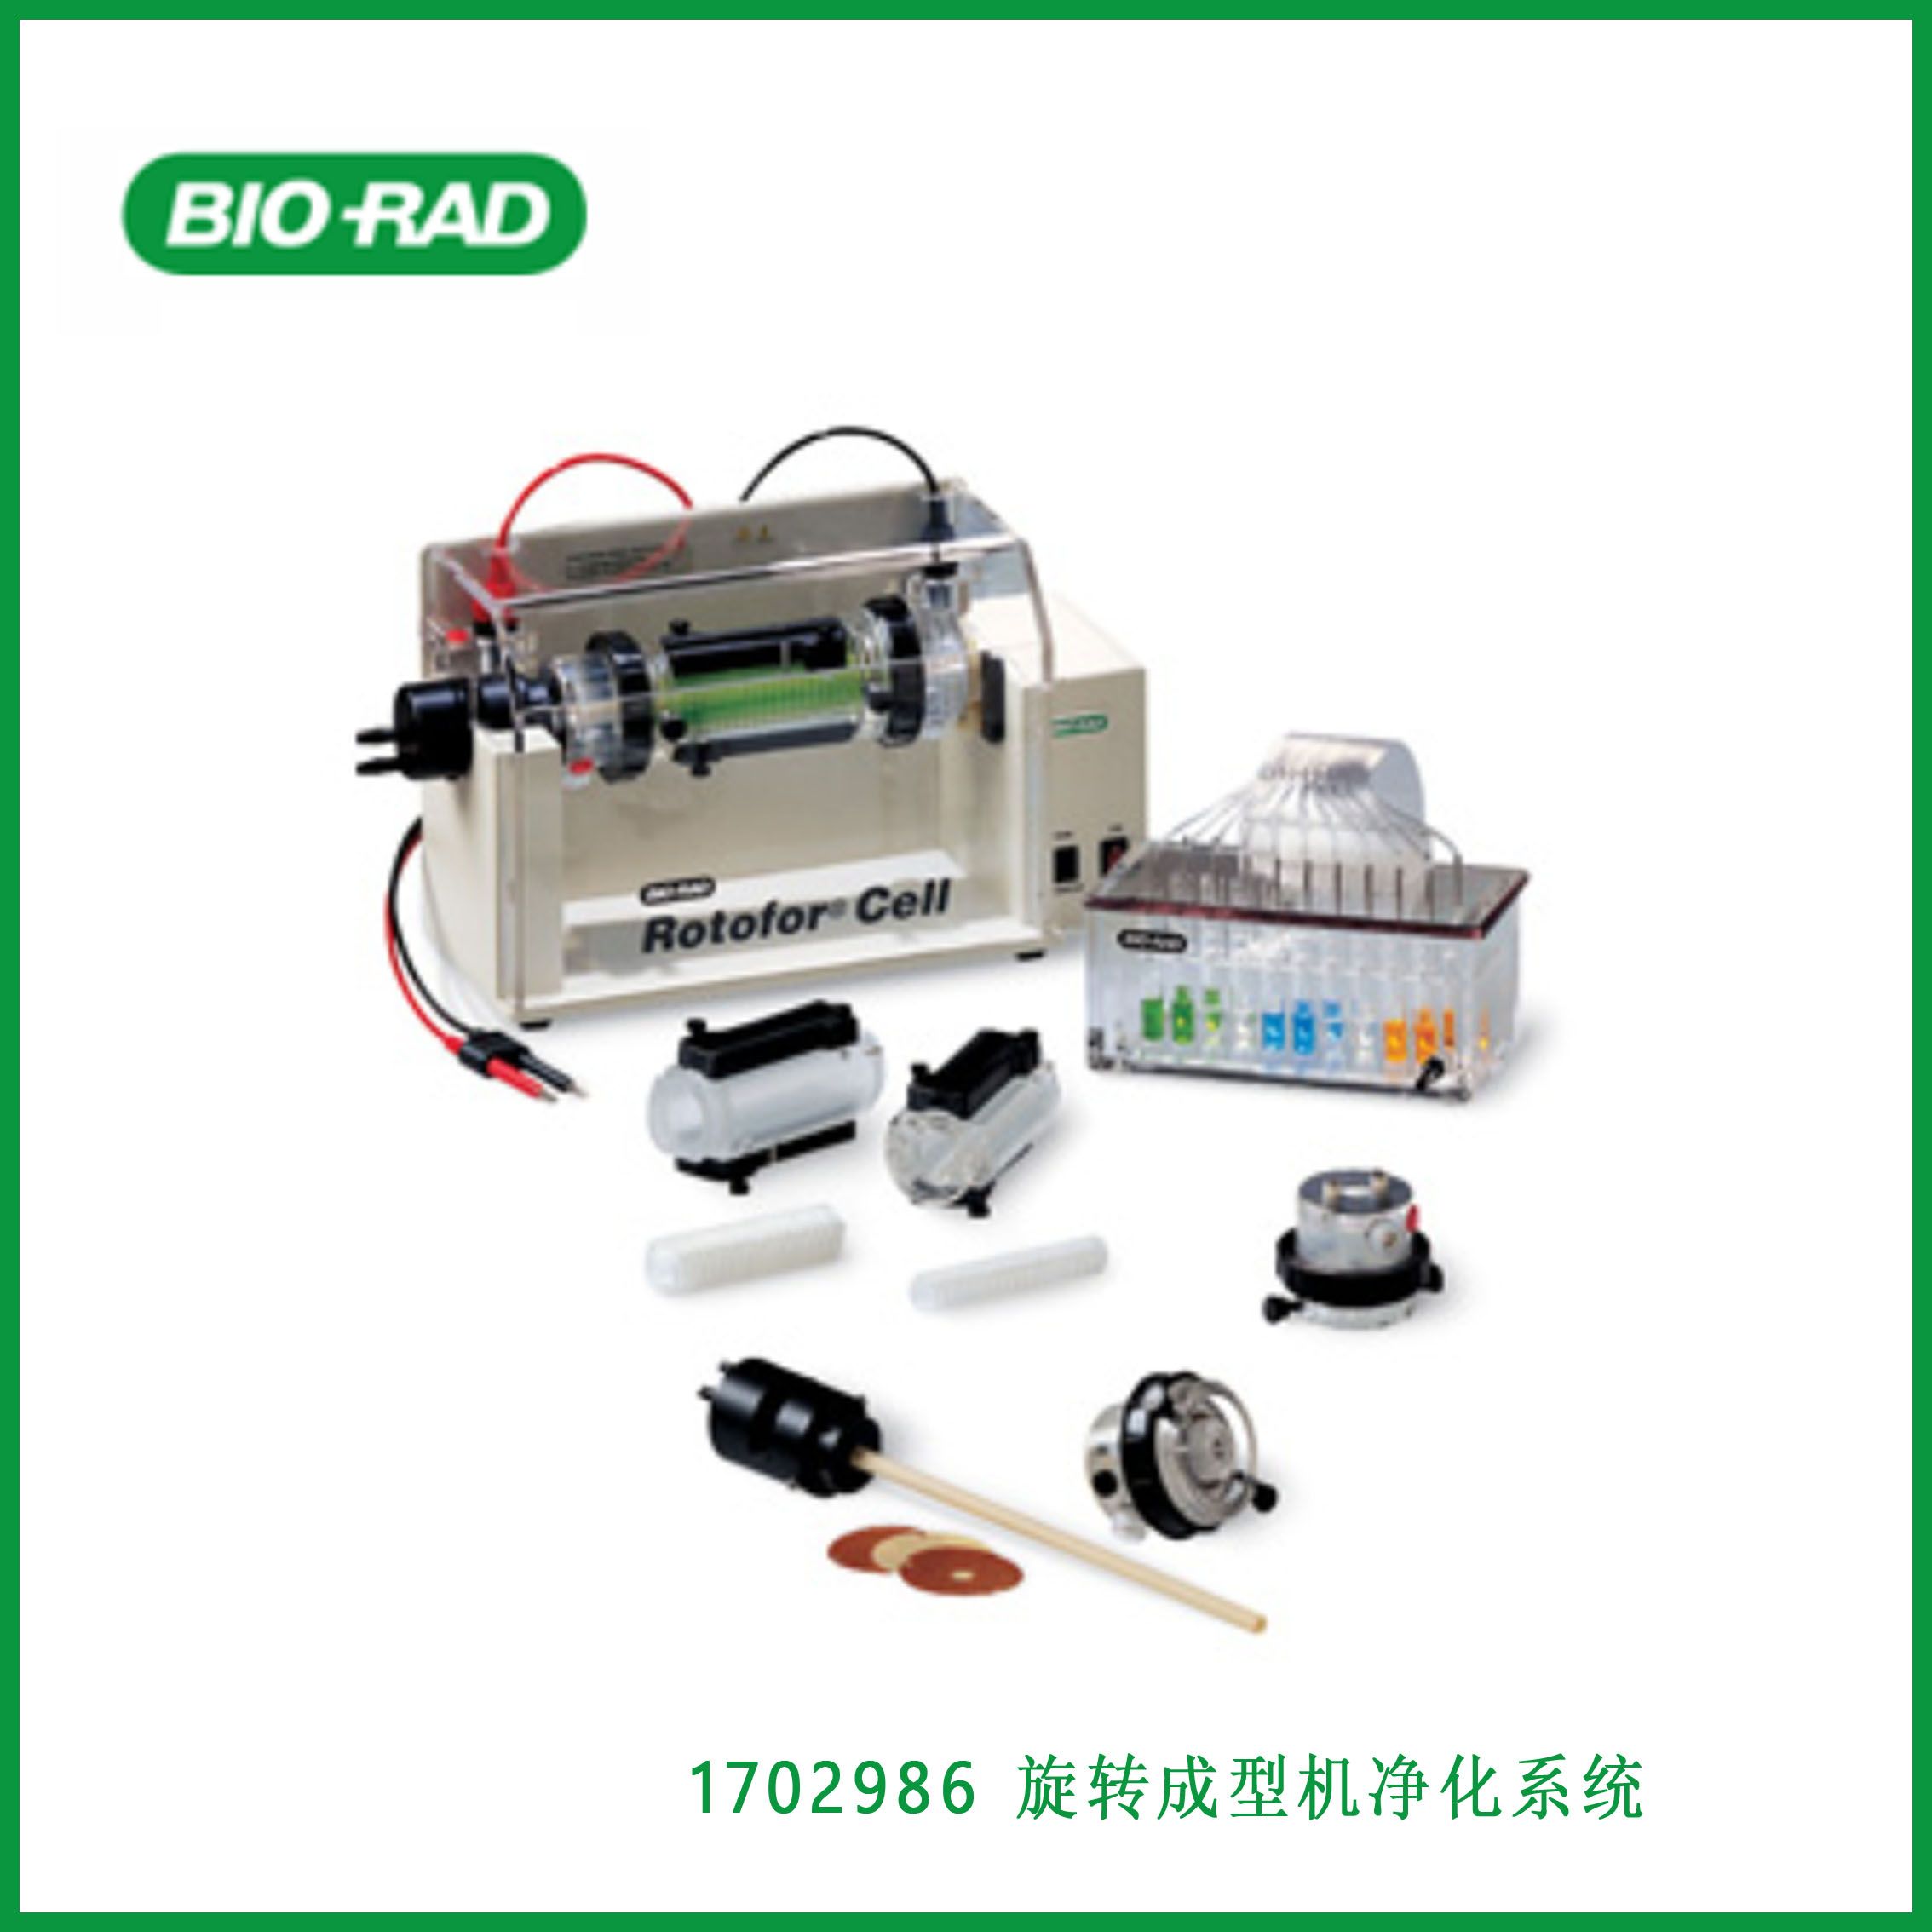 伯乐Bio-Rad1702986Rotofor Purification System, Rotofor等电聚焦仪。现货